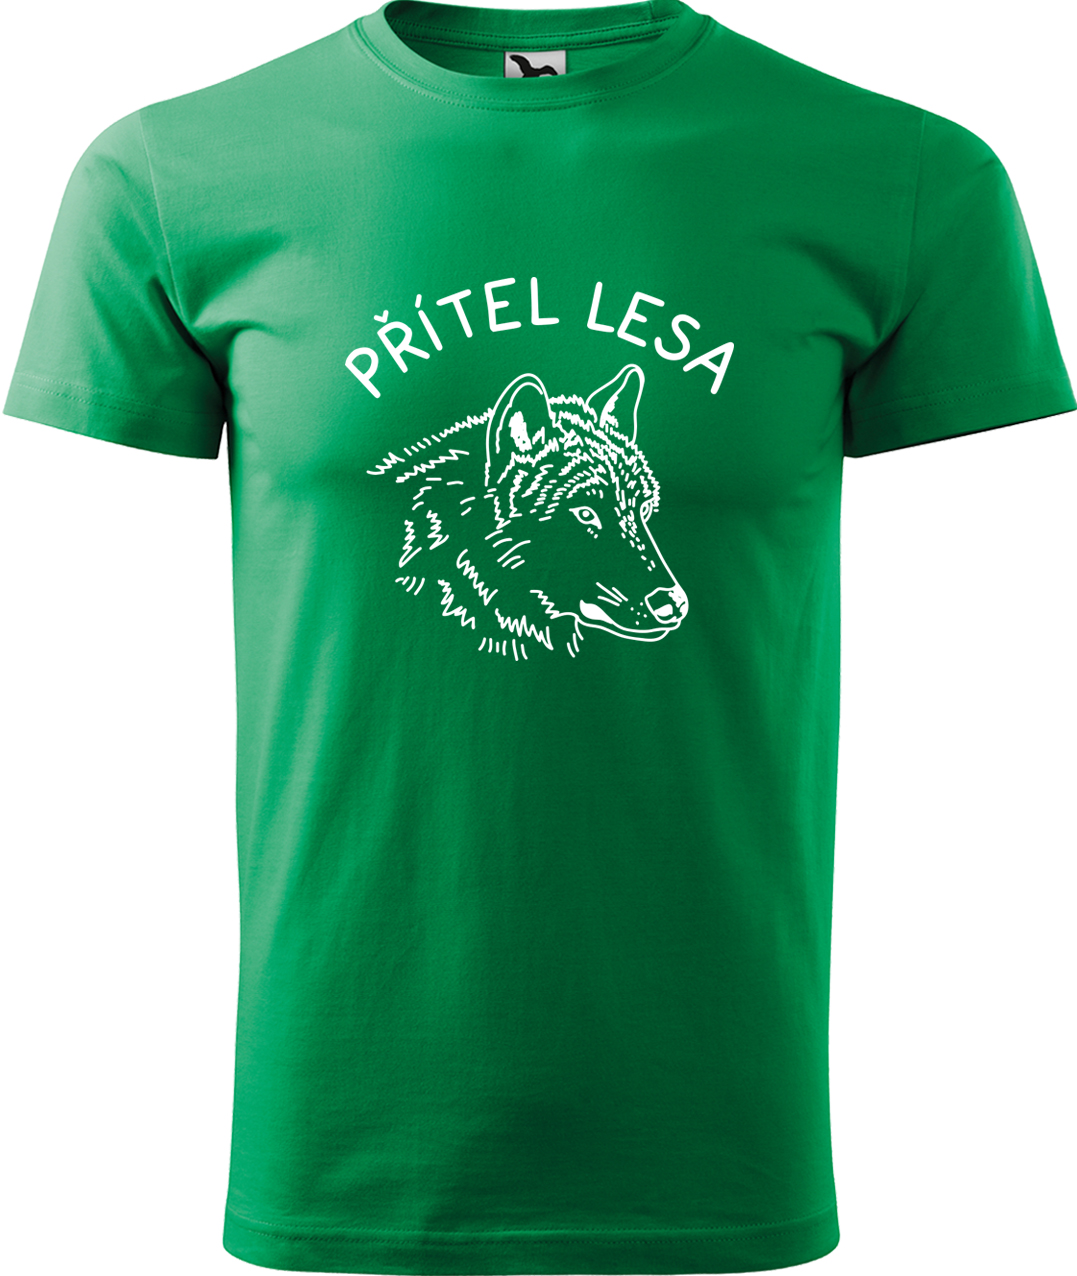 Pánské tričko s vlkem - Přítel lesa Velikost: XL, Barva: Středně zelená (16), Střih: pánský